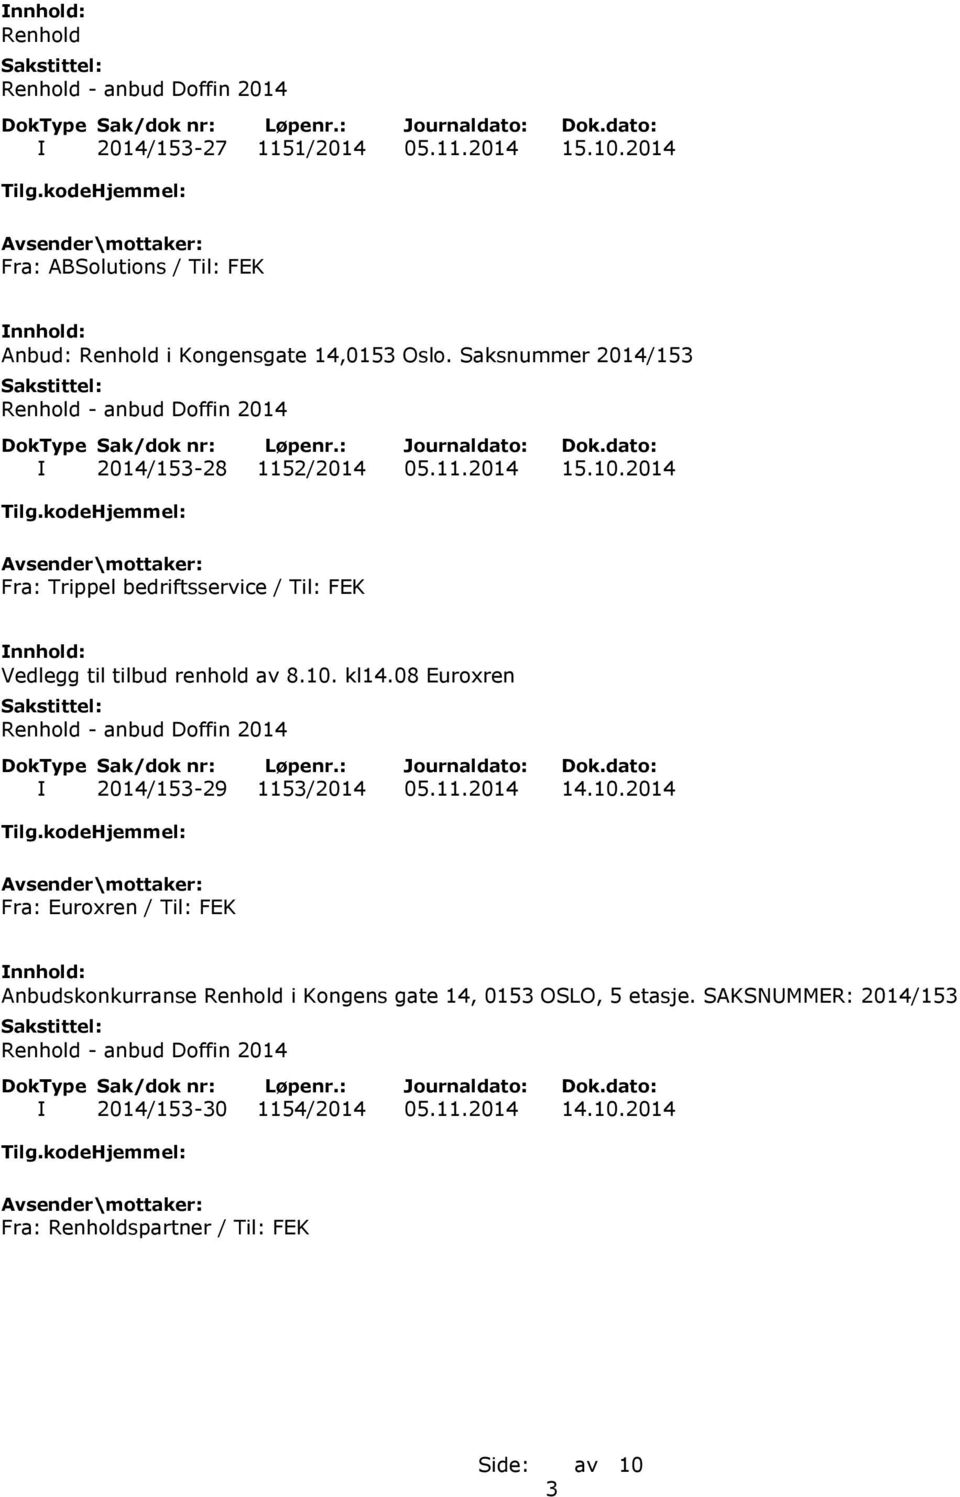 2014 Fra: Trippel bedriftsservice / Til: FEK Vedlegg til tilbud renhold av 8.10. kl14.08 Euroxren I 2014/153-29 1153/2014 05.11.2014 14.